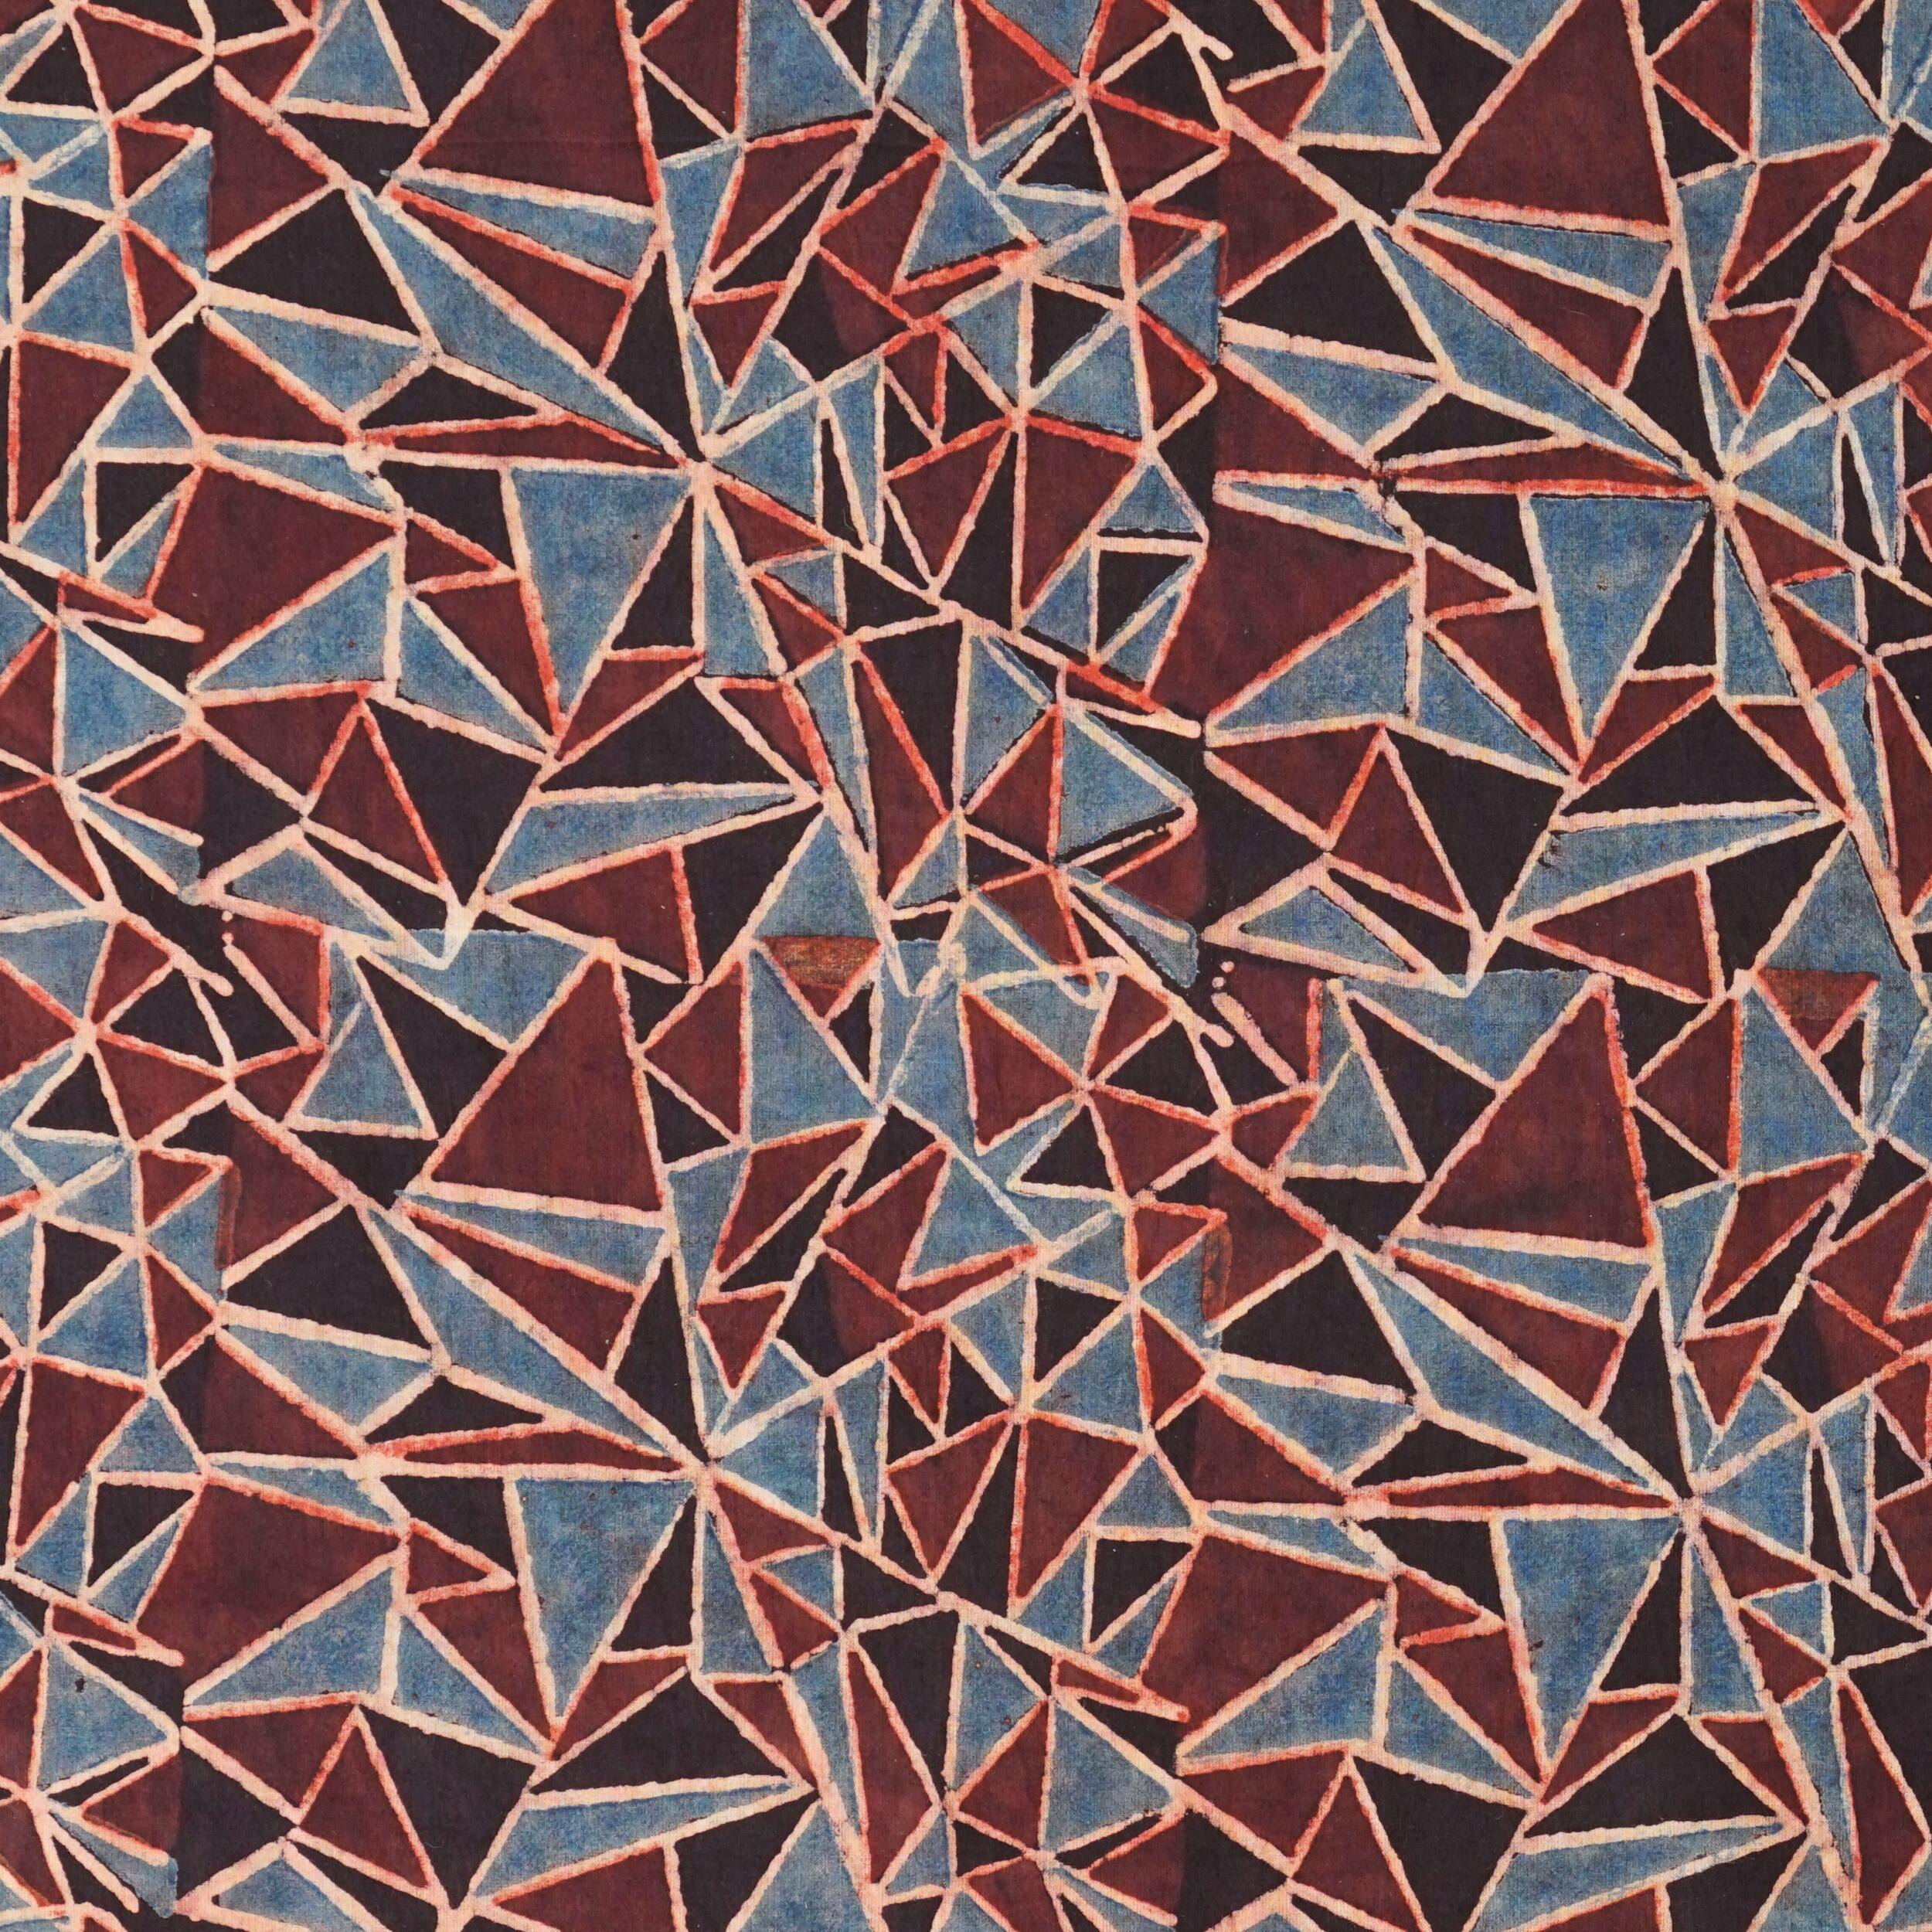 SIK34 - Indian Block-Printed Cotton - Shattered Design - Indigo, Red & Black Dye - Flat